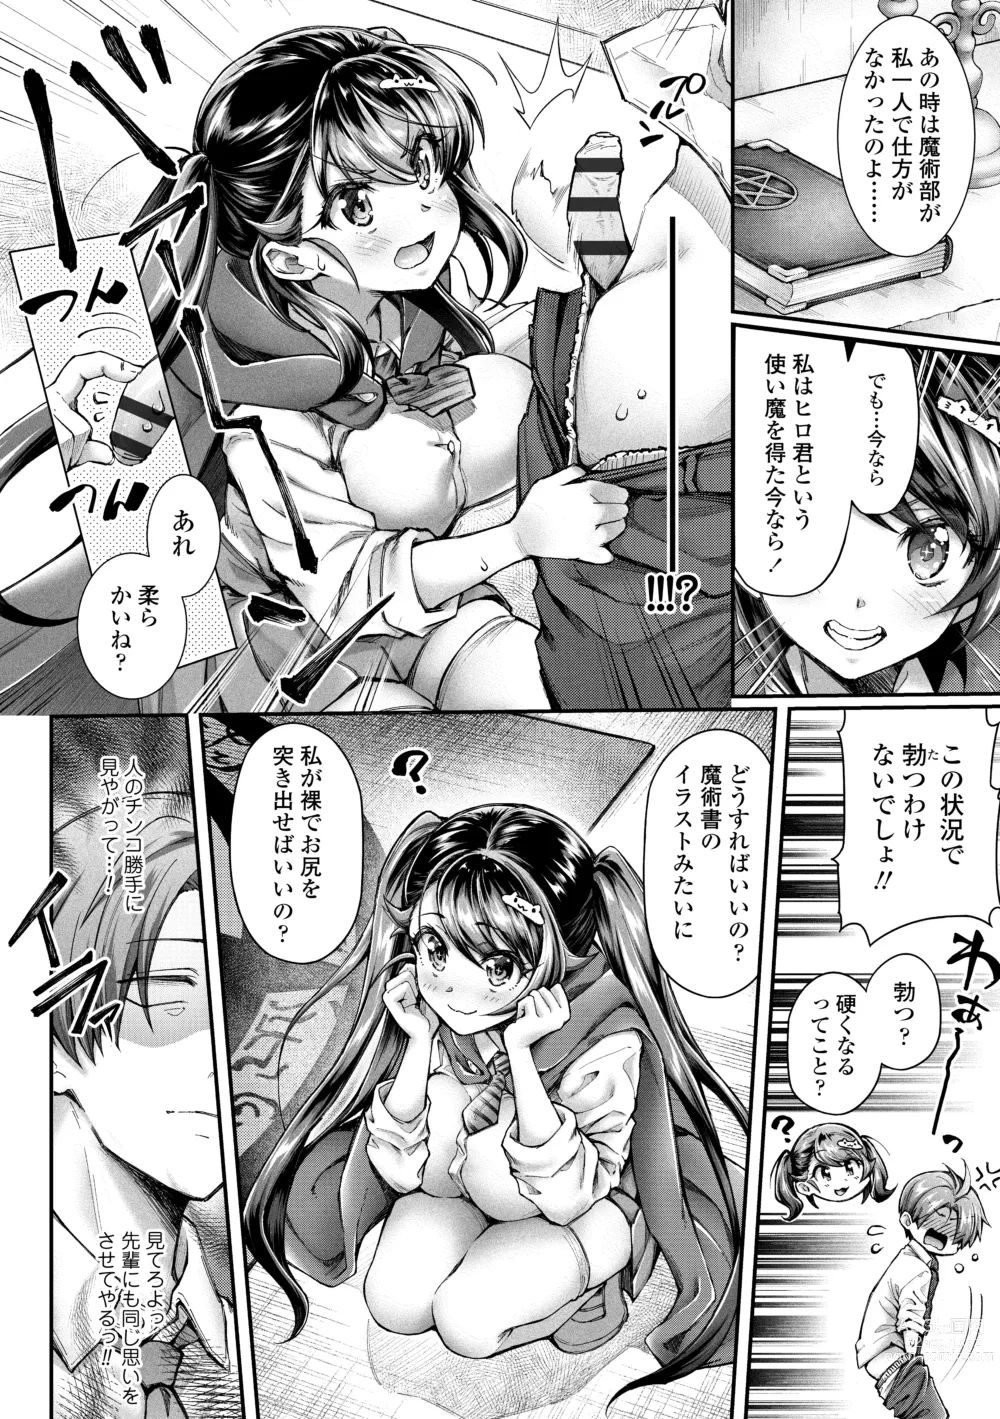 Page 8 of manga Hen na Ko demo Ii desu ka?